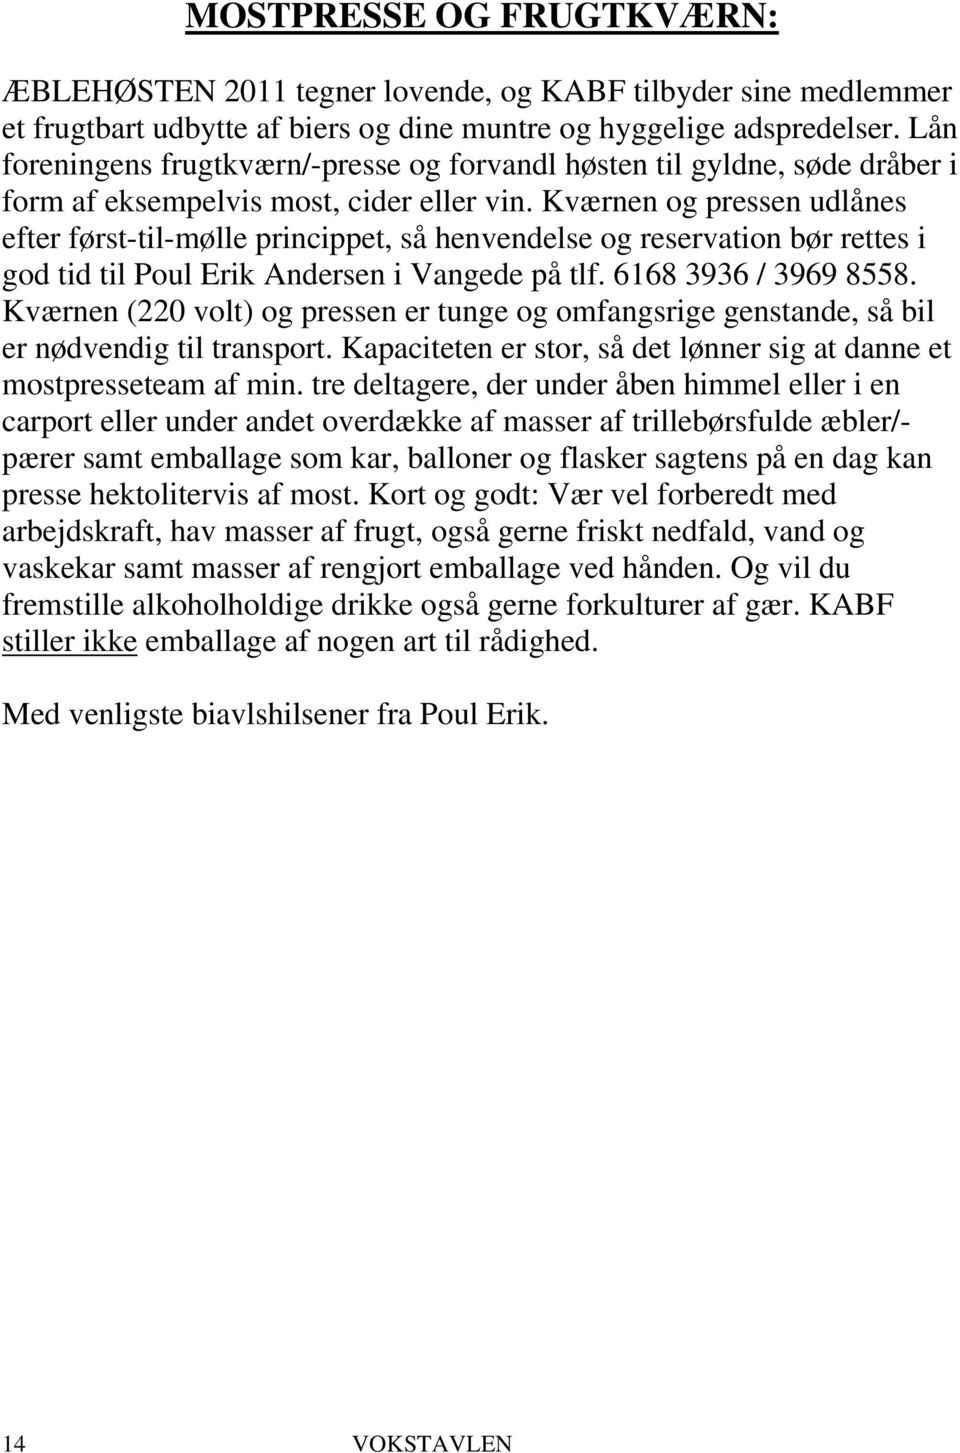 Kværnen og pressen udlånes efter først-til-mølle princippet, så henvendelse og reservation bør rettes i god tid til Poul Erik Andersen i Vangede på tlf. 6168 3936 / 3969 8558.